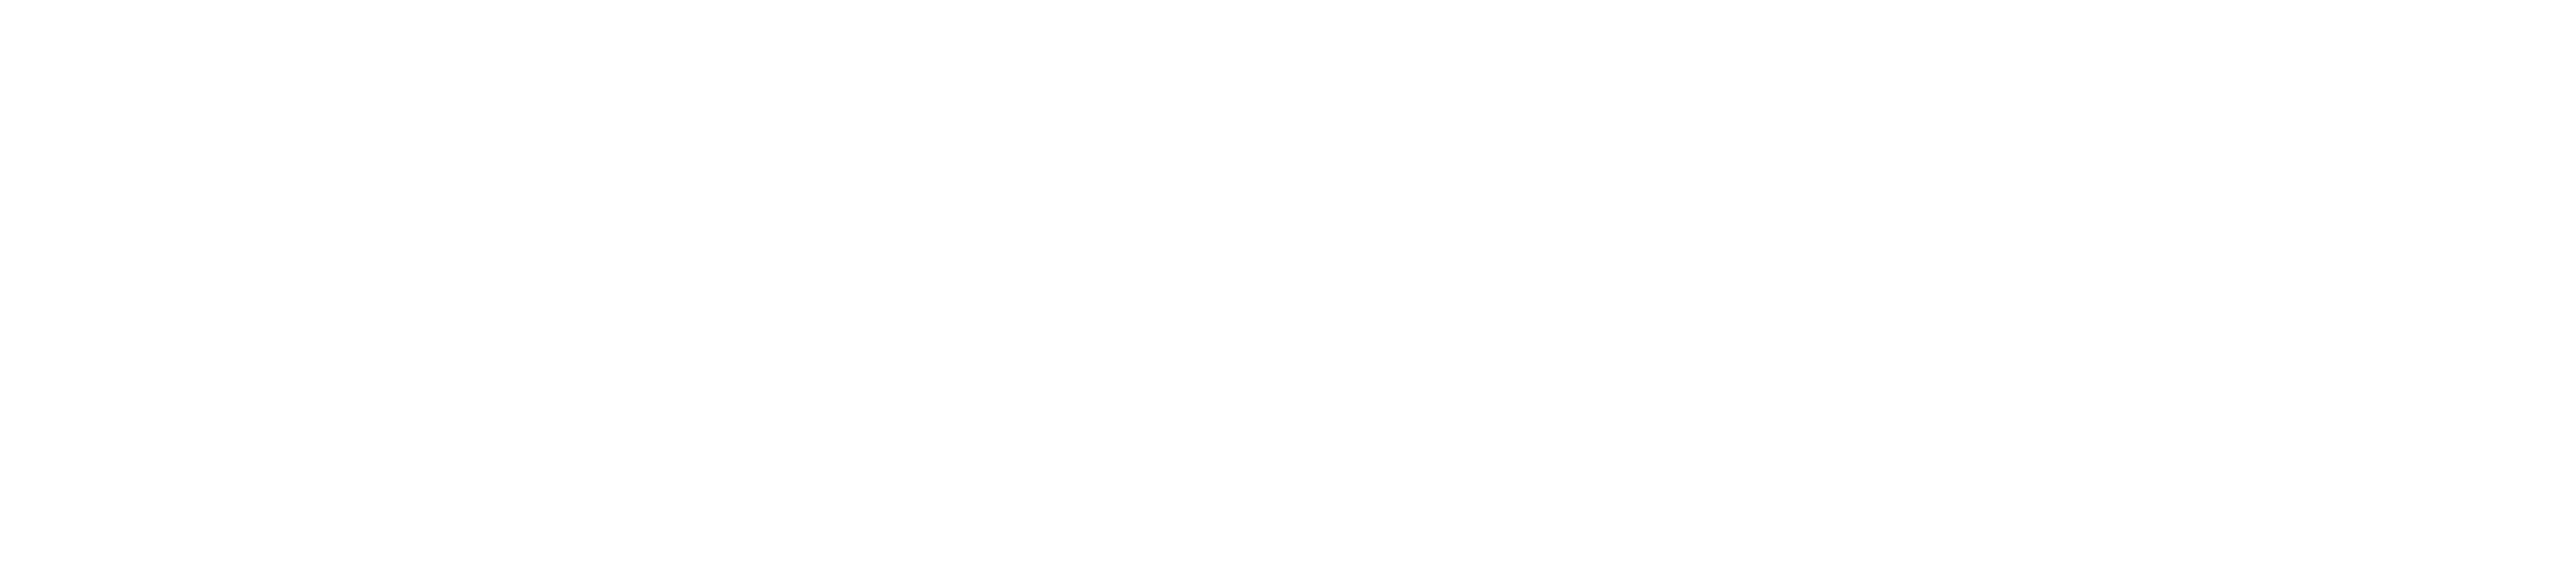 Surplus.com Logo